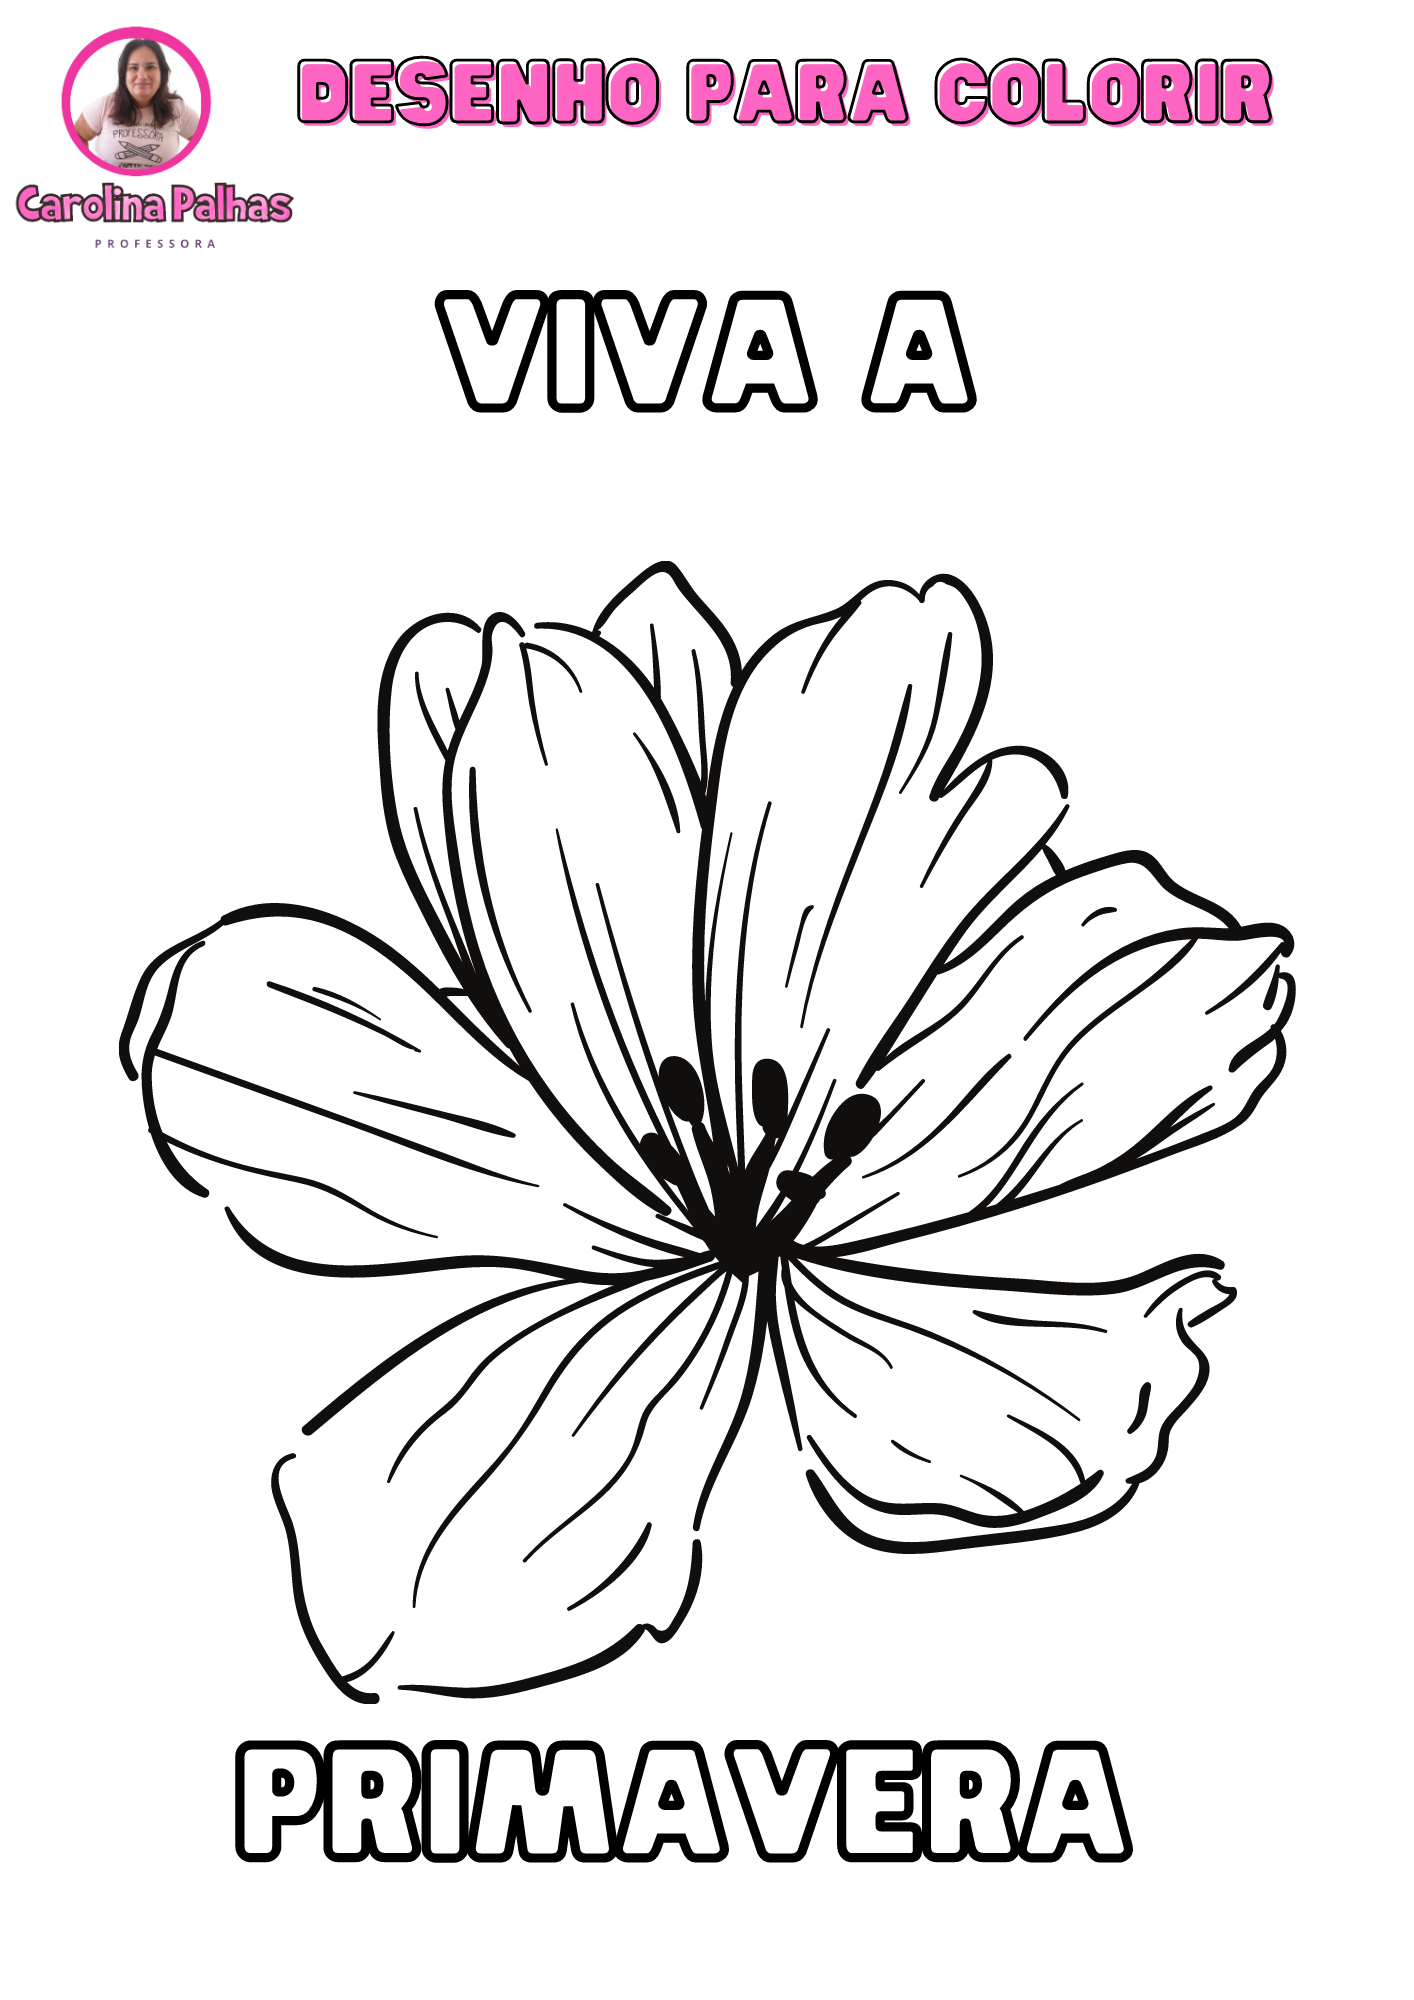 Desenho para colorir com o tema Viva a Primavera - Professora